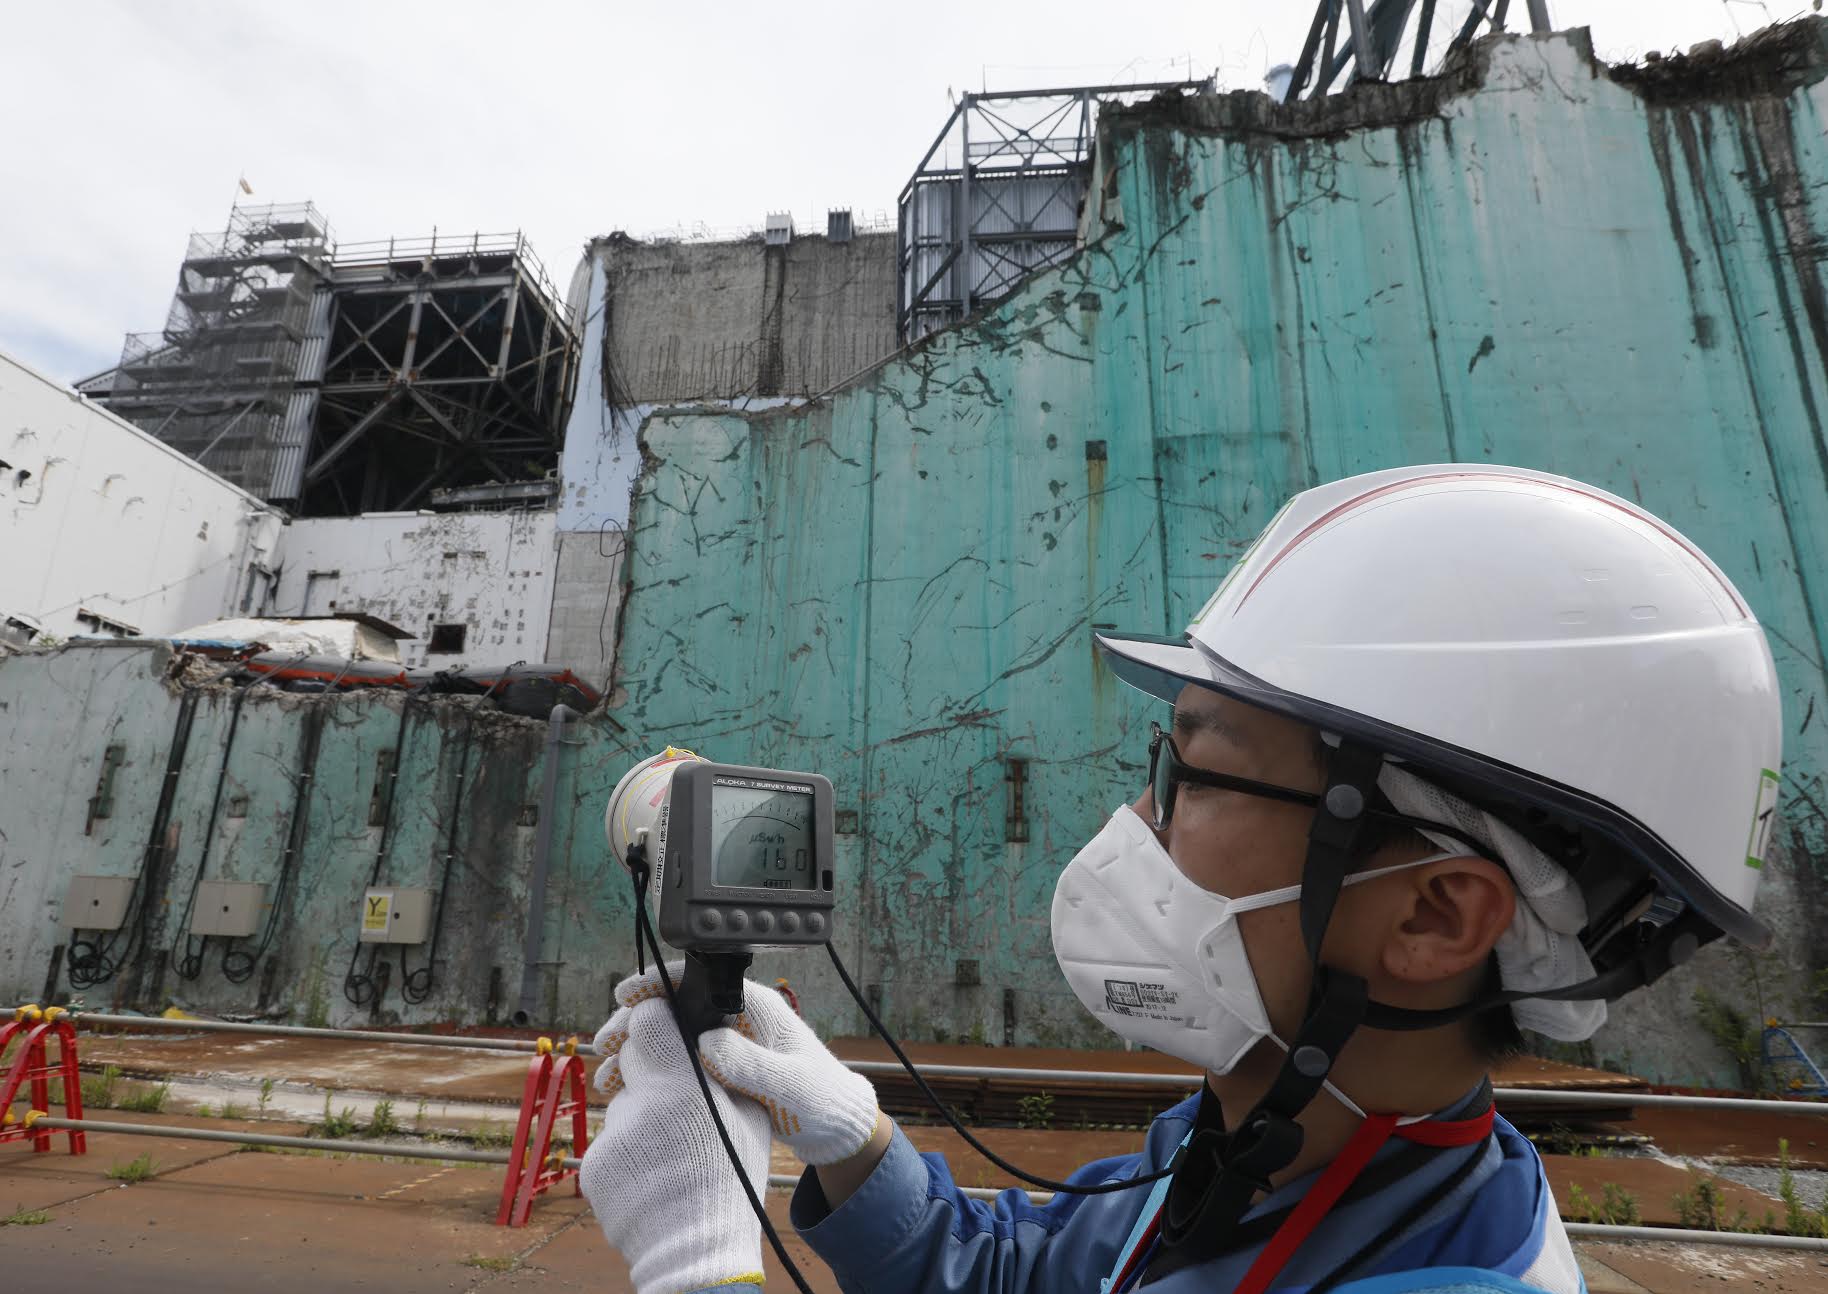 Авария на аэс в японии. АЭС Фукусима-1. Авария на АЭС Фукусима-1. Японии на АЭС «Фукусима-1». Авария на АЭС Фукусима-1 (Япония, 2011)..